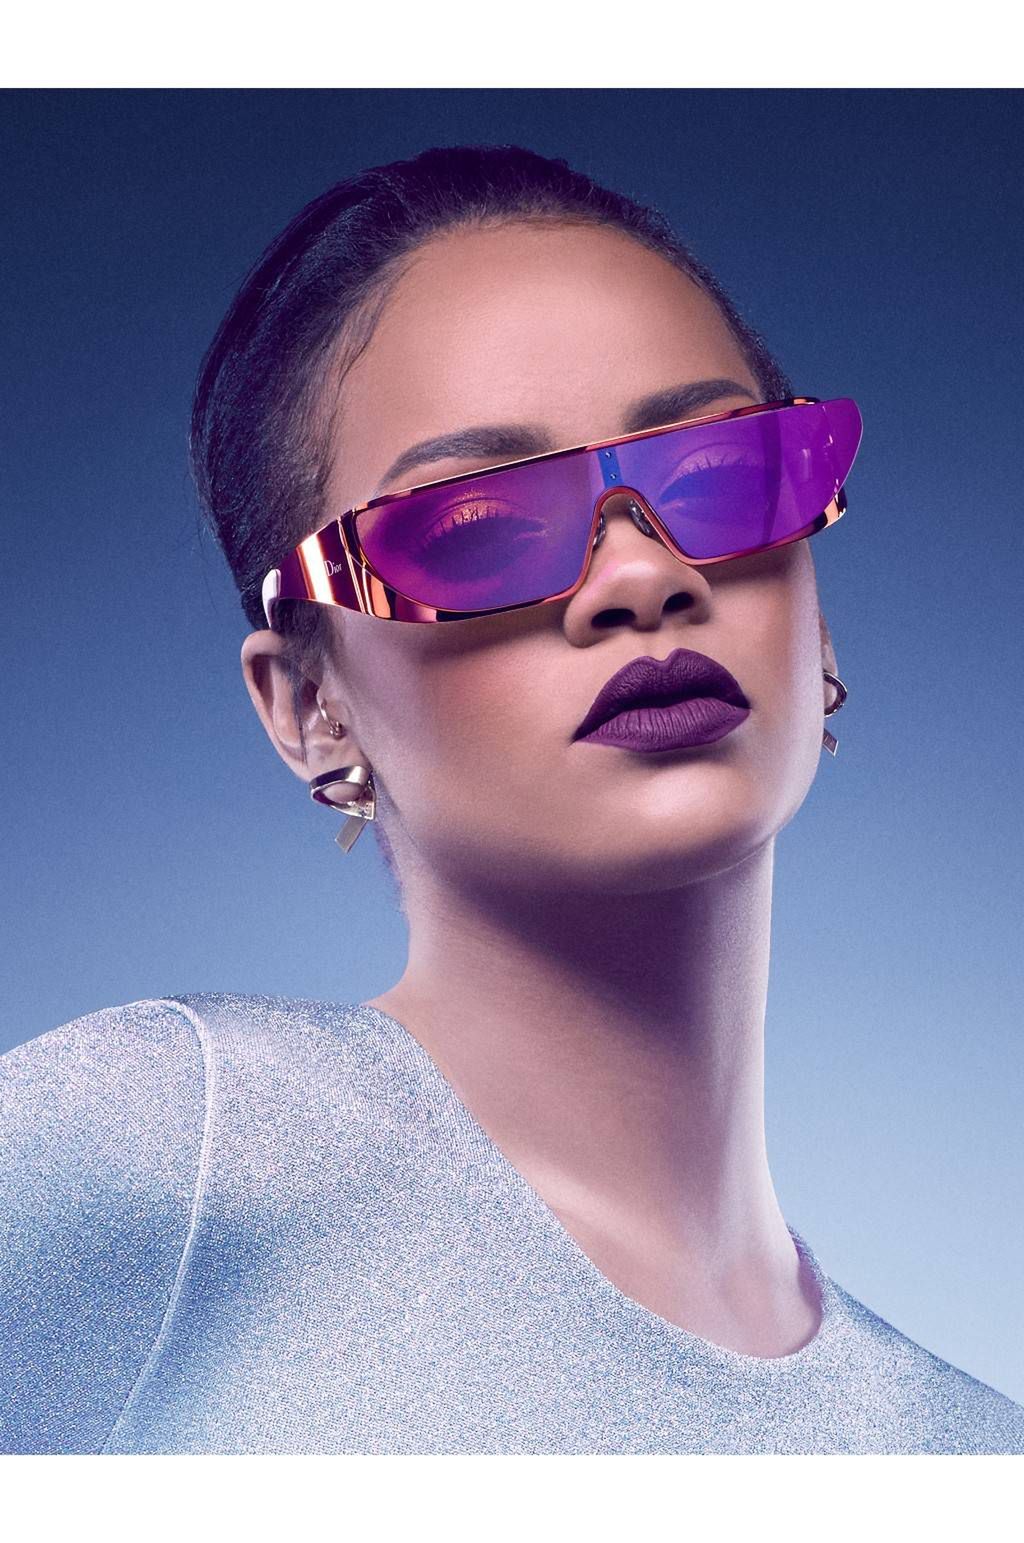 Rihanna w kampanii promującej jej kolekcję okularów dla Dior (fot. Jean-Baptiste Mondino / Dior)